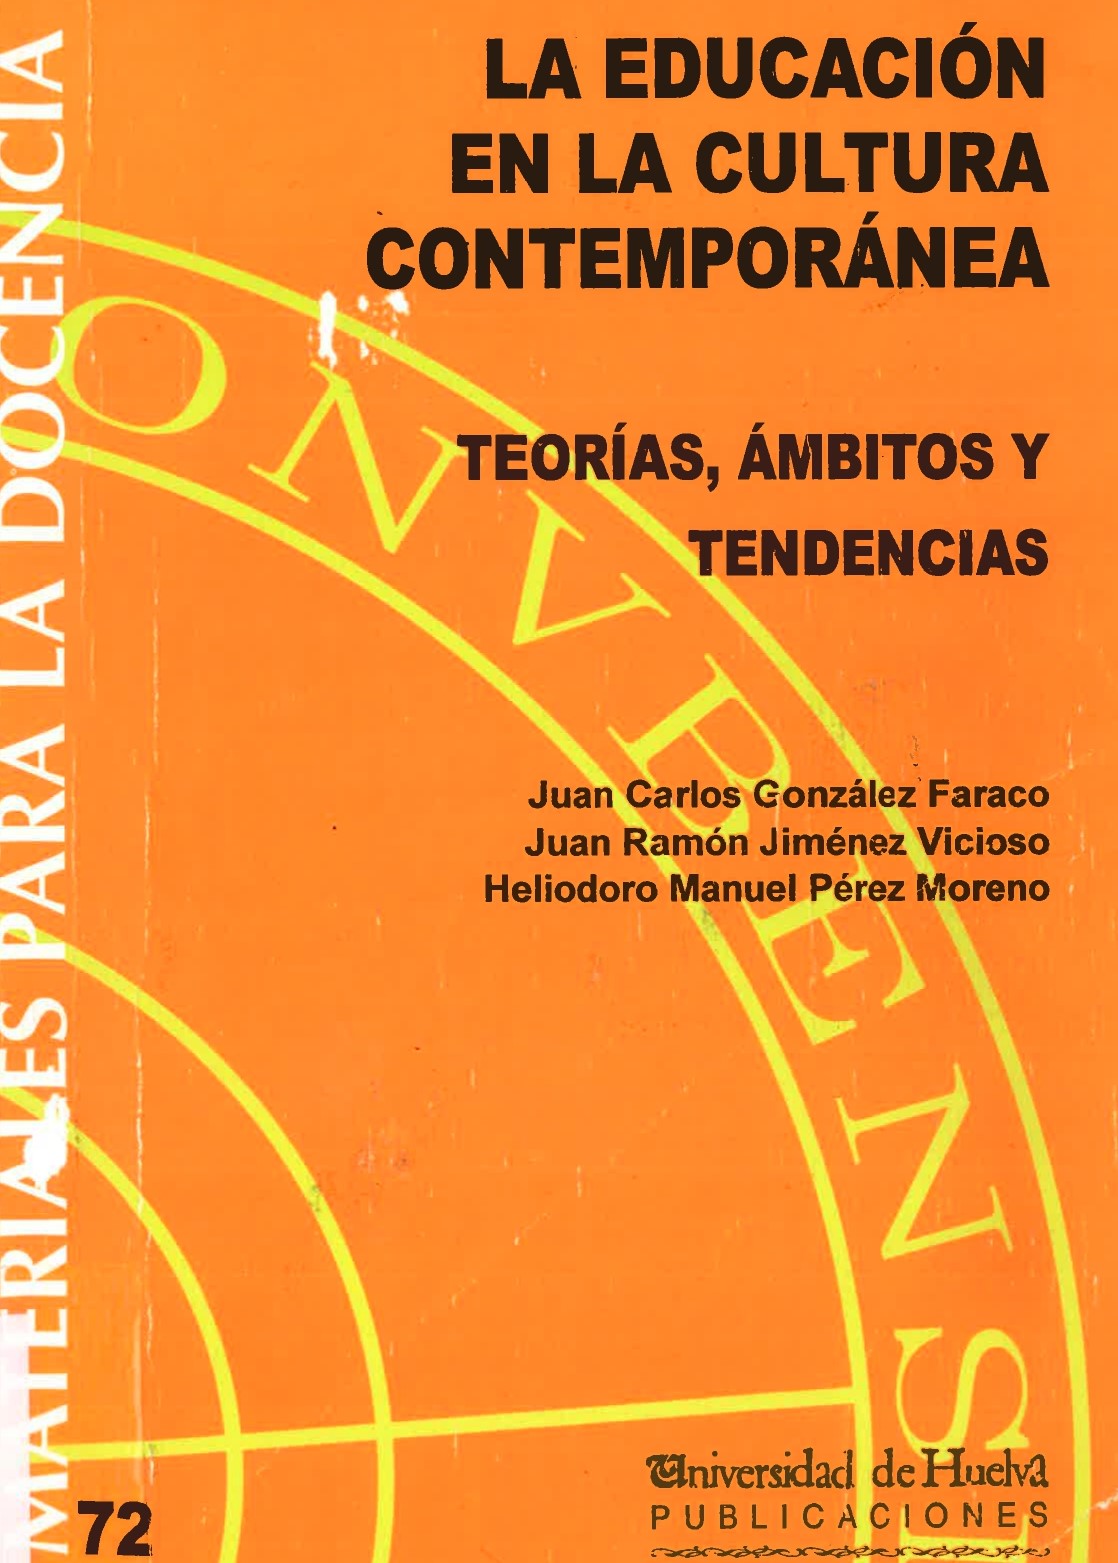 Imagen de portada del libro La Educación en la Cultura Contemporánea